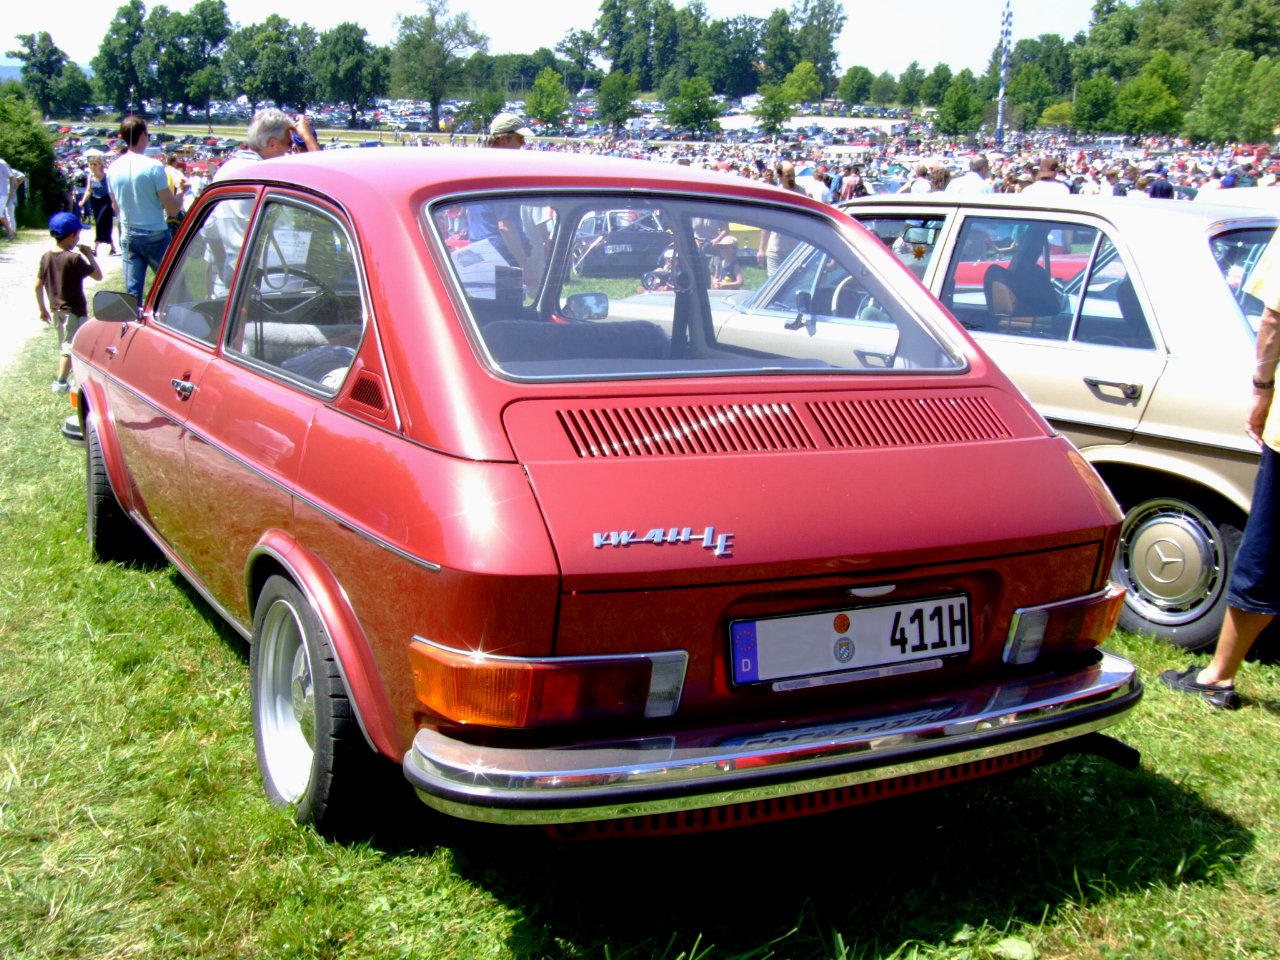 Volkswagen 411 LE